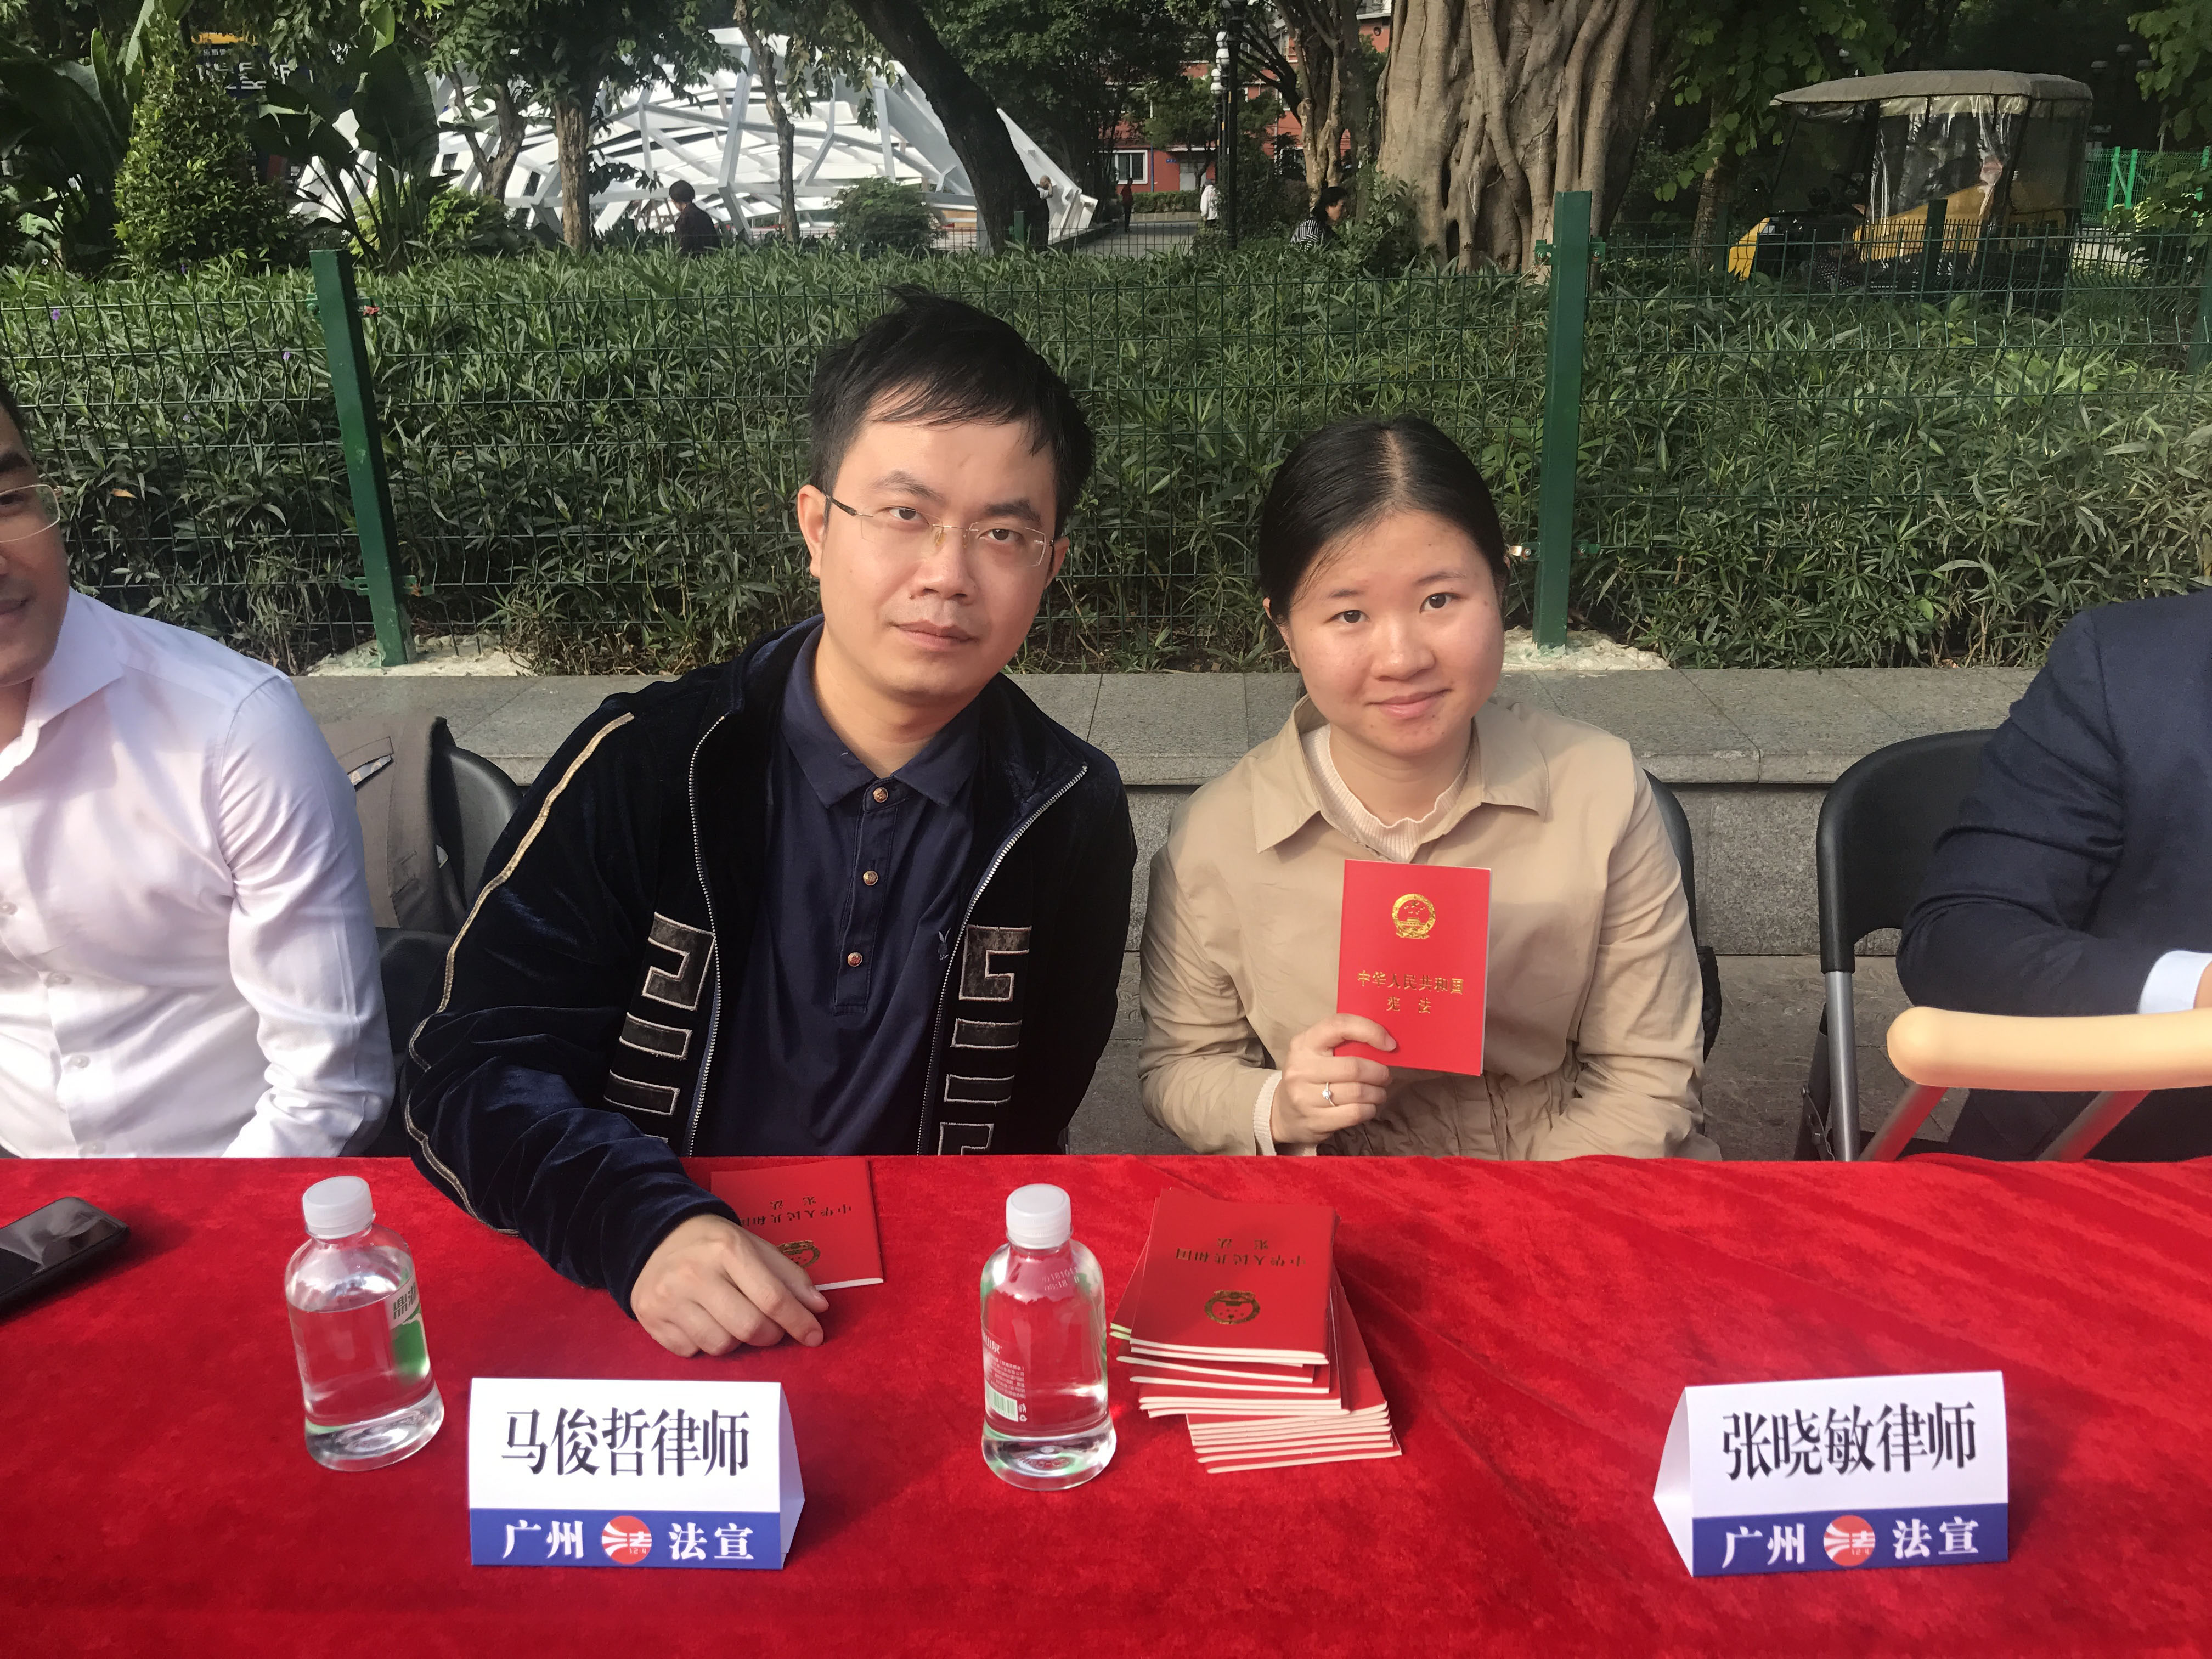 团队马俊哲律师与张晓敏律师接受社会大众的咨询